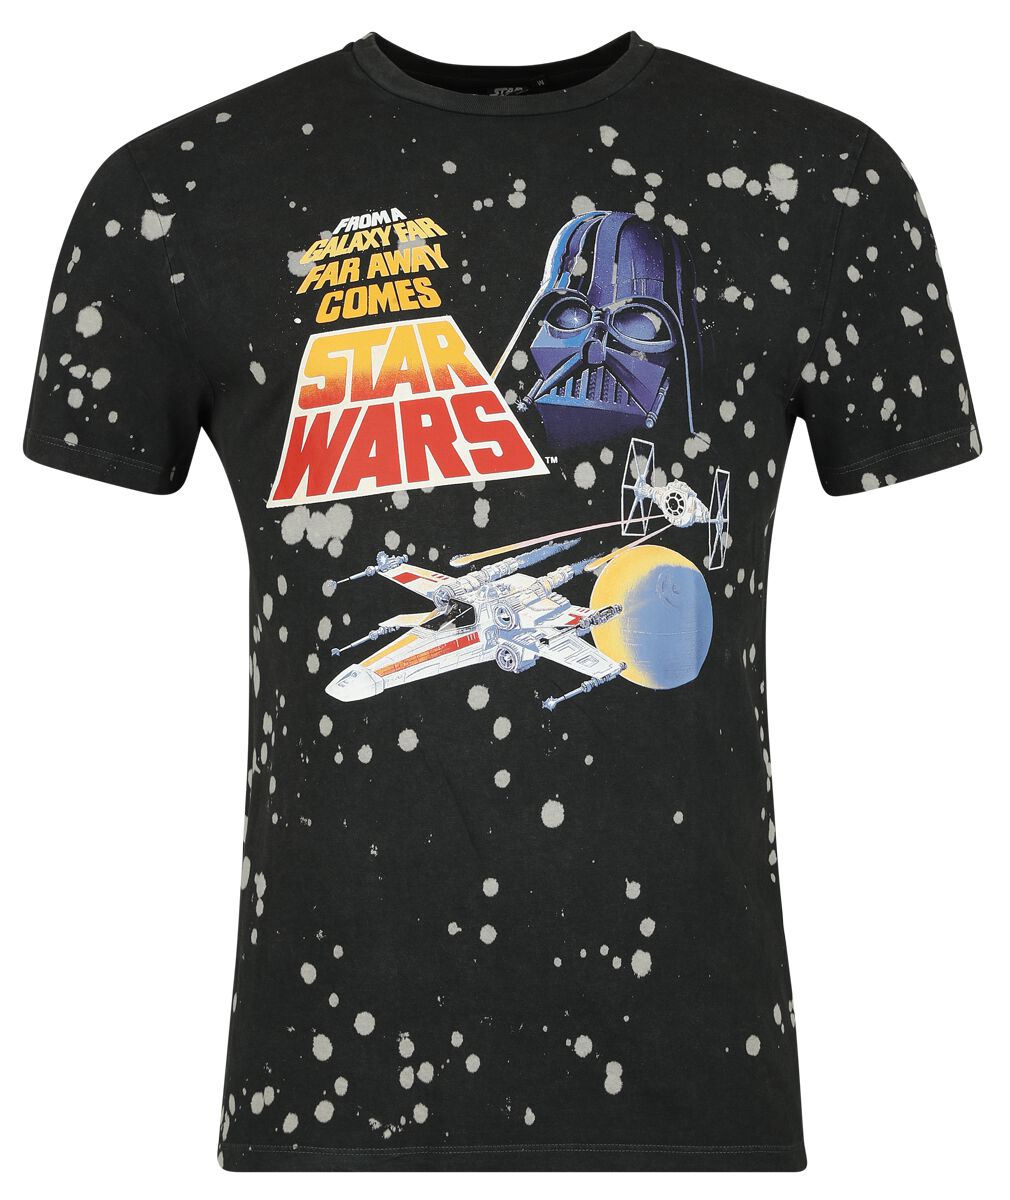 Star Wars T-Shirt - Classic - Space - S bis XXL - für Männer - Größe XL - schwarz  - Lizenzierter Fanartikel